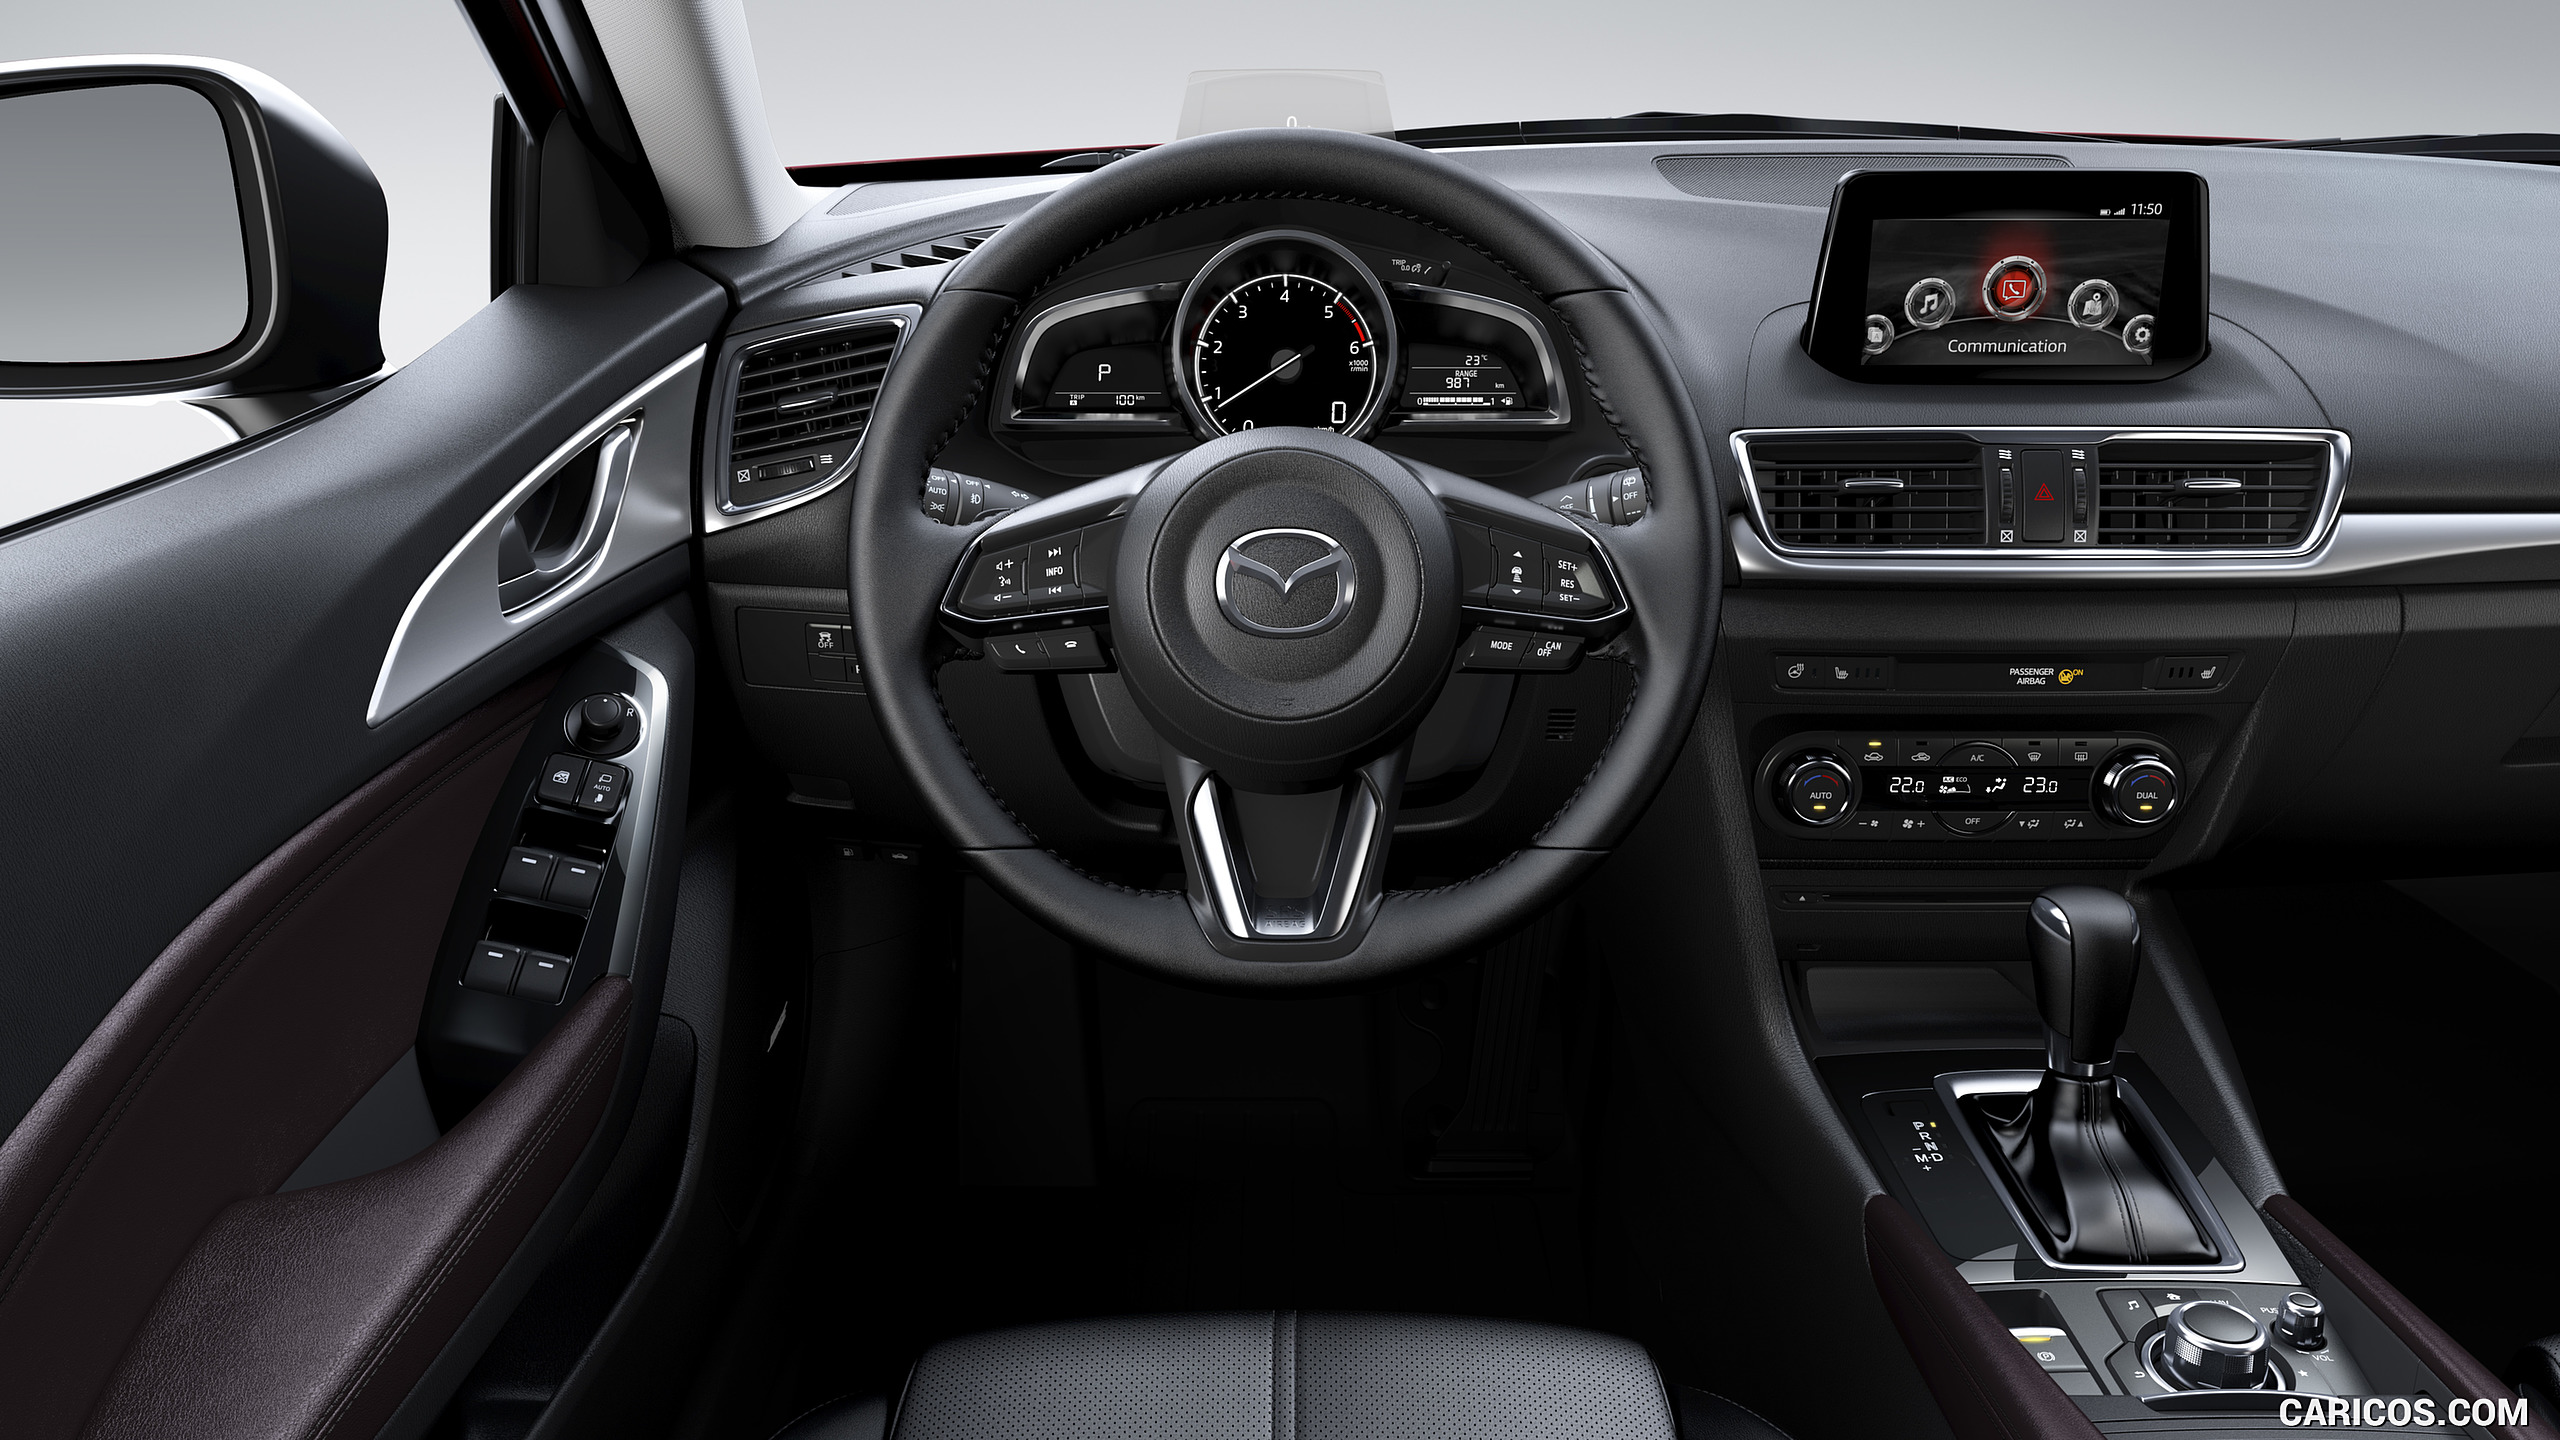 2017 Mazda 3 5 Door Hatchback Interior Cockpit Hd